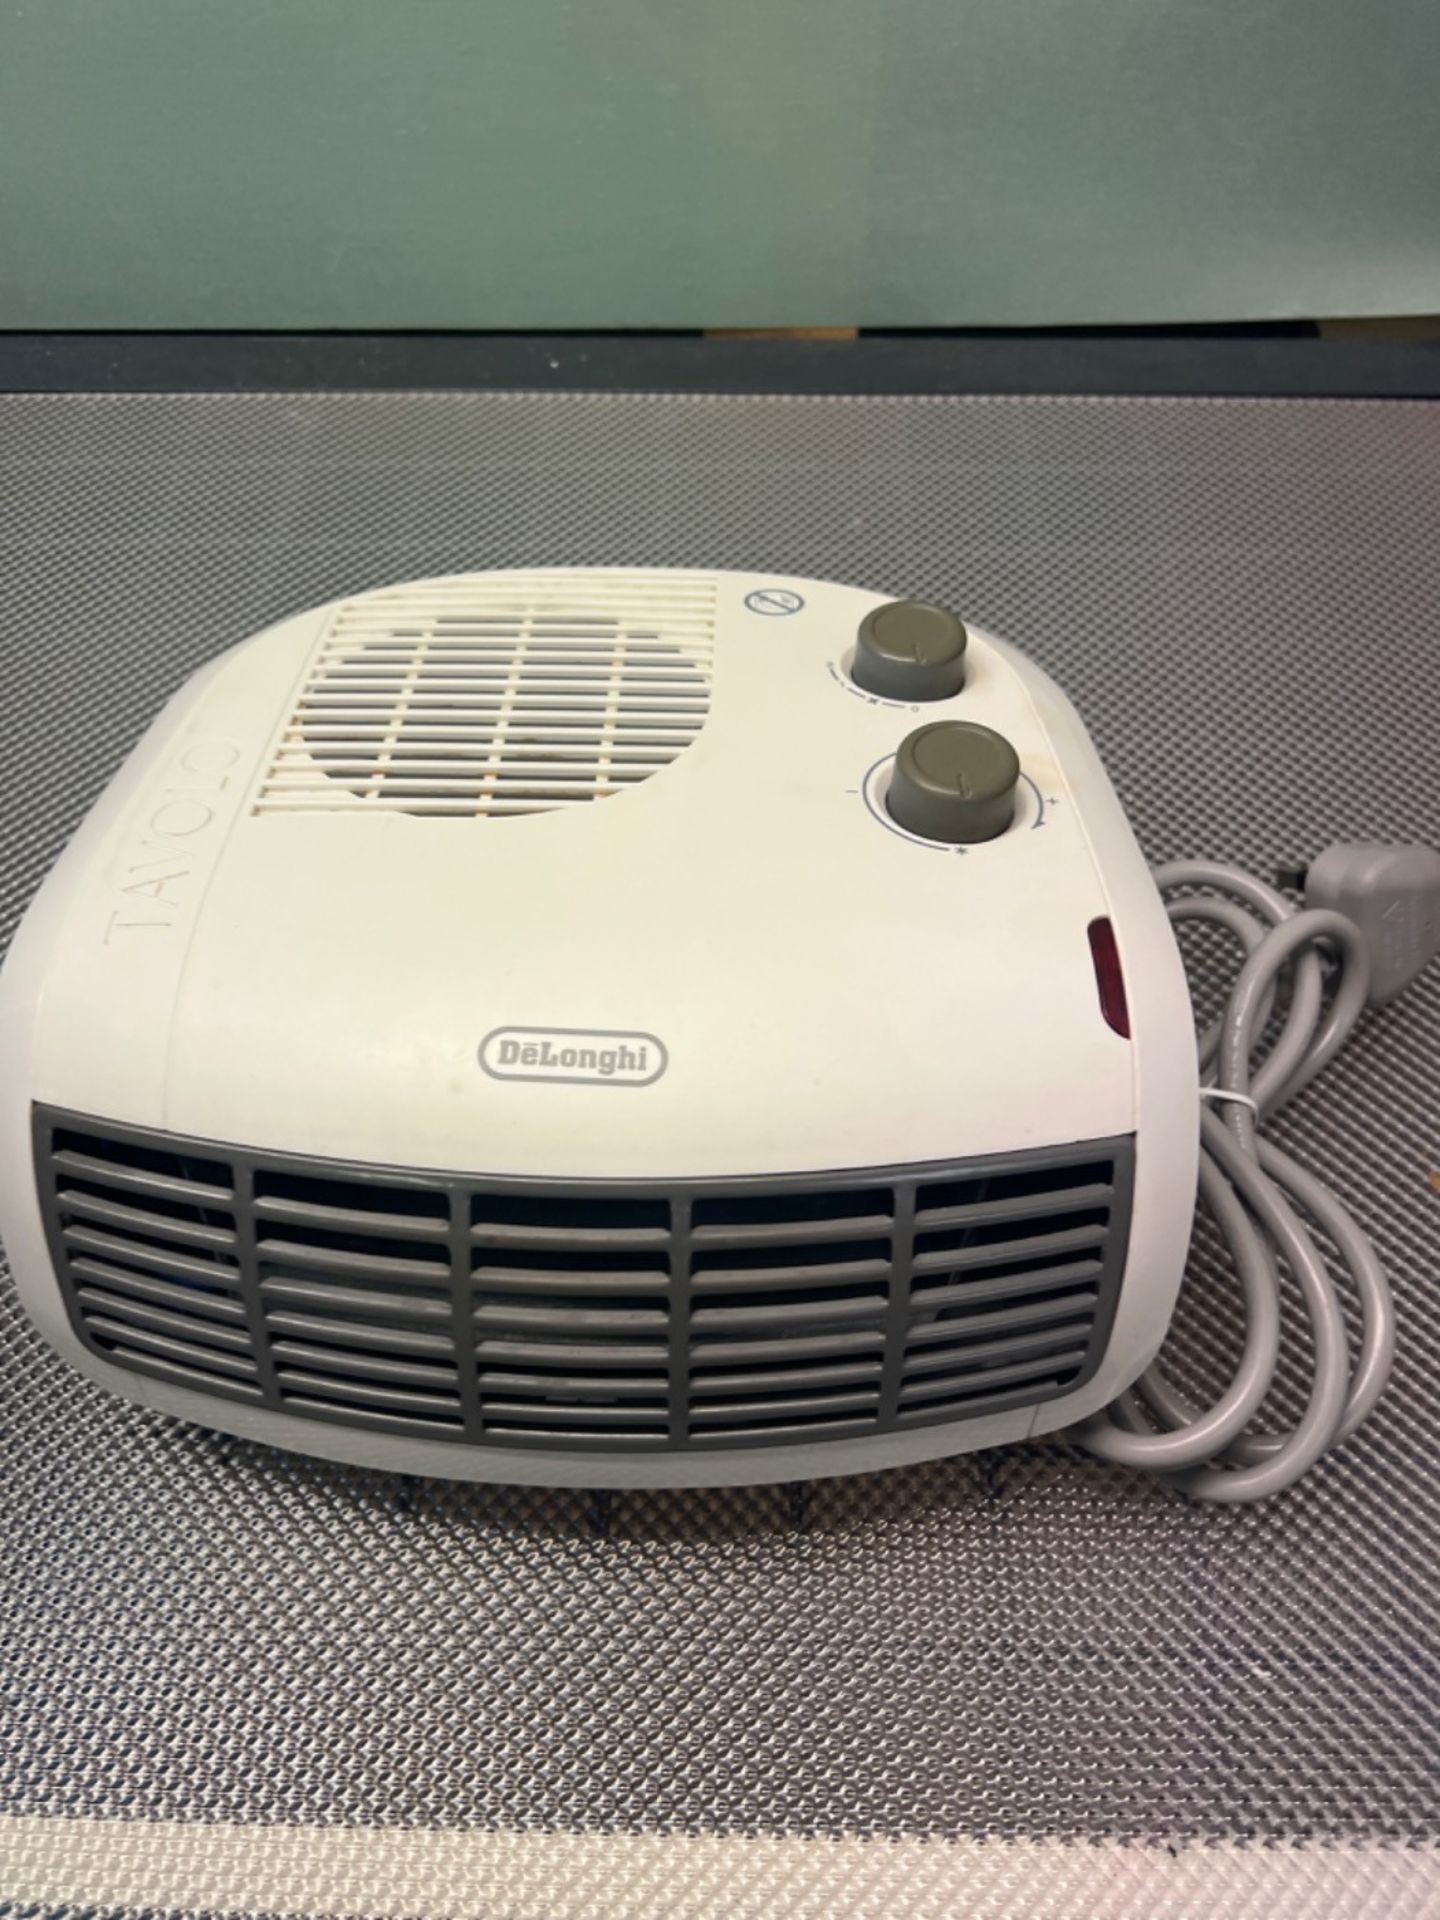 De'Longhi HTF3033 Fan Heater - White - Image 2 of 3